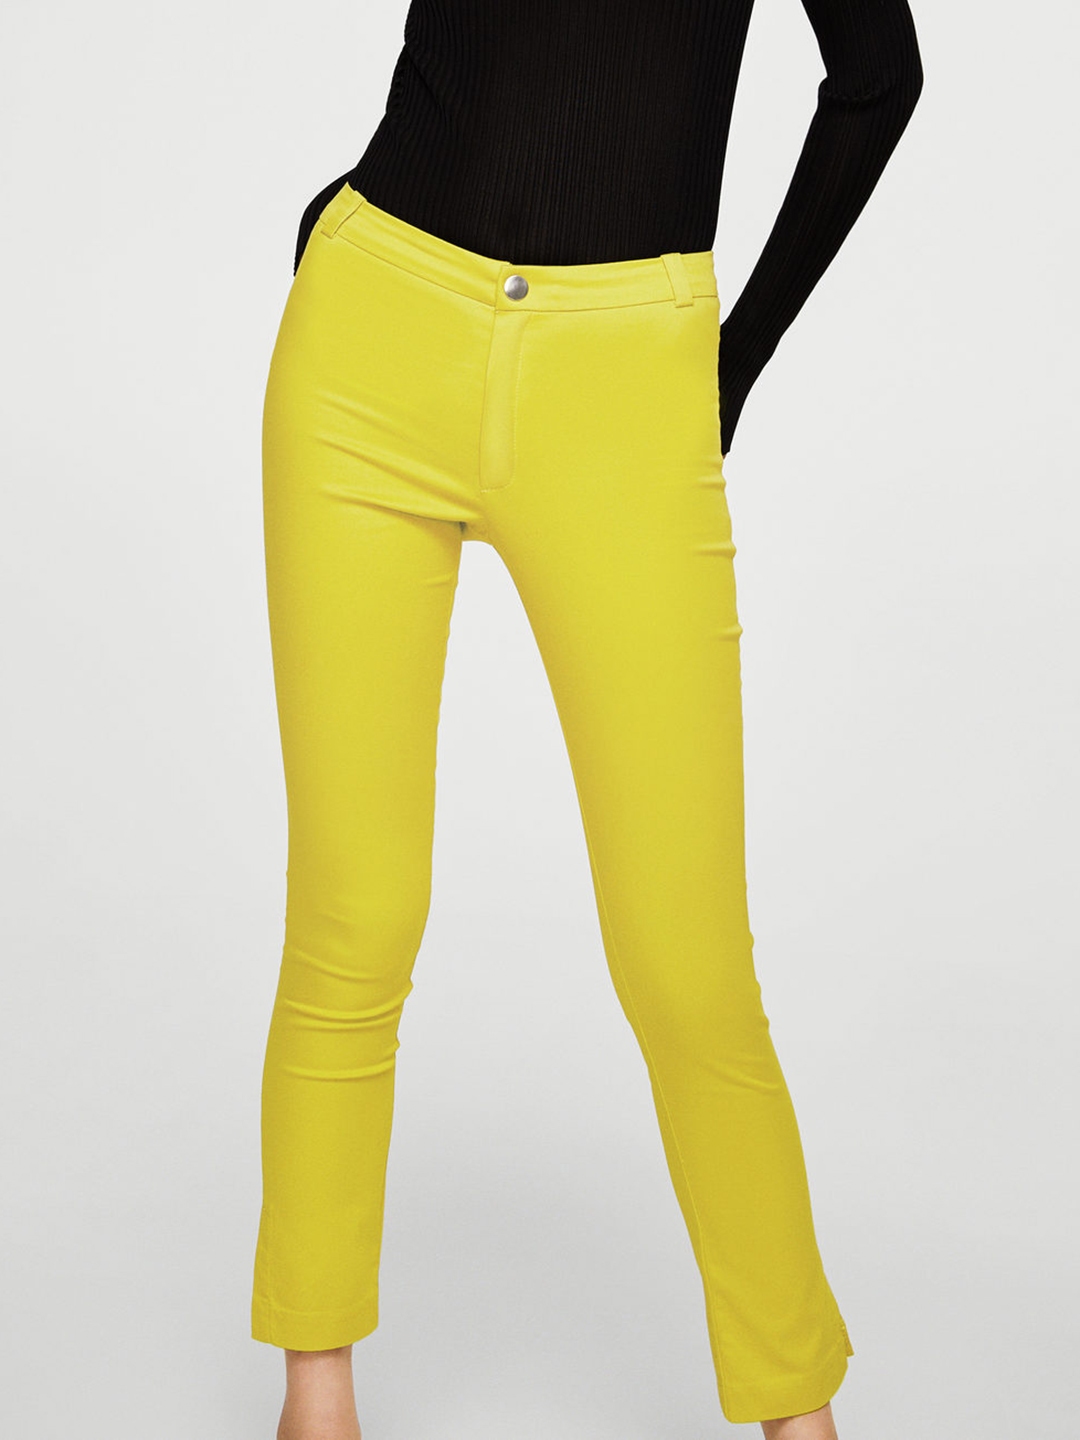 Slim Fit Plain Yellow Cotton Trouser